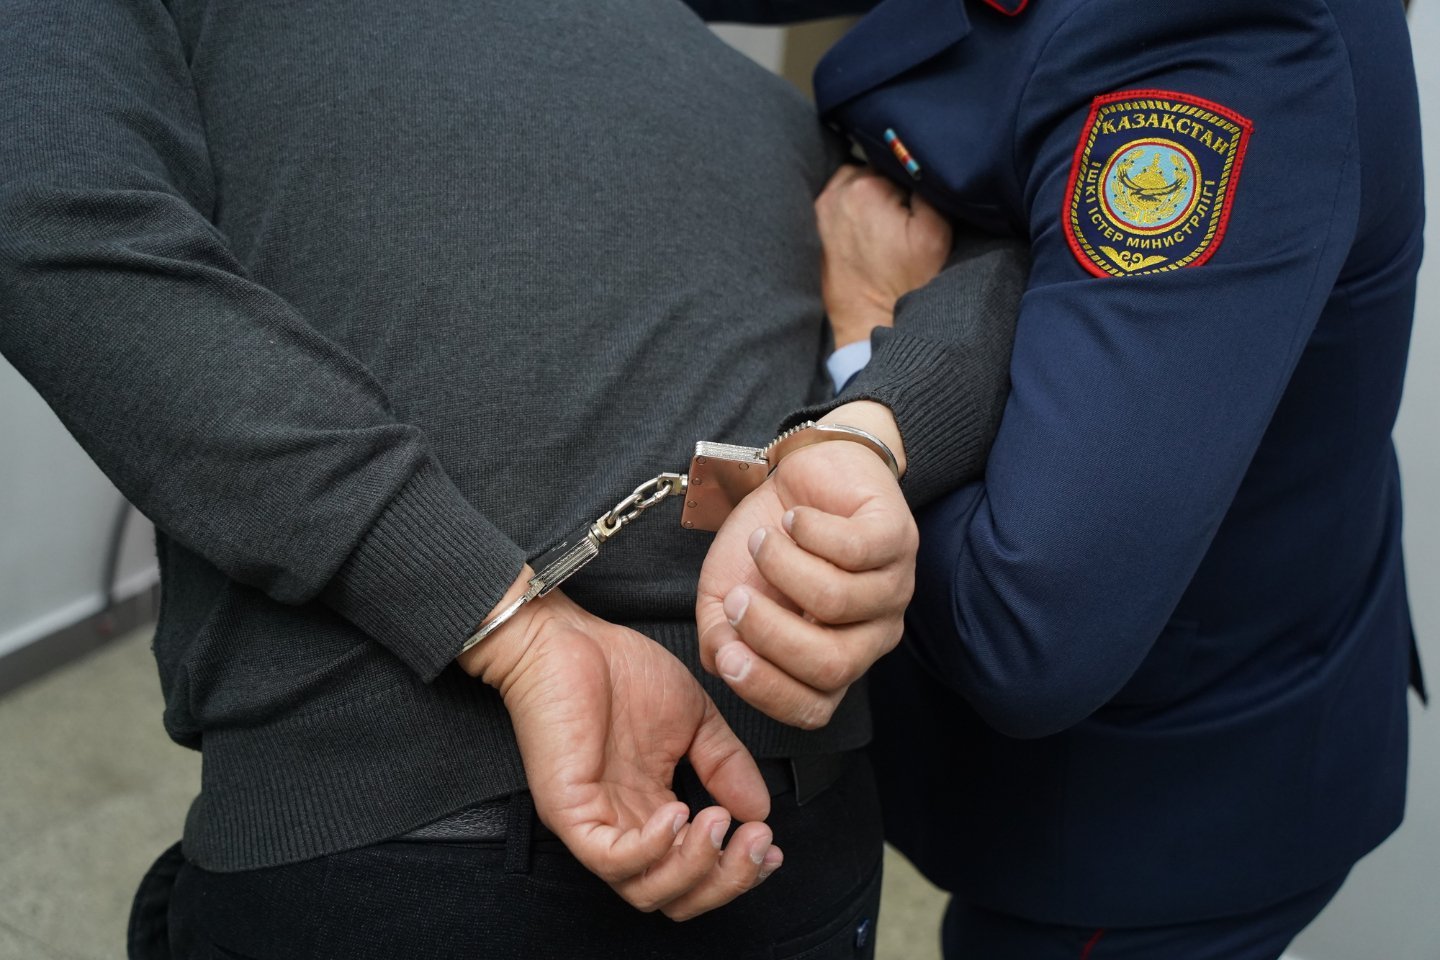 Происшествия в Казахстане и мире / Криминальные новости / В Шымкенте задержали злоумышленников, притворявшихся полицейскими